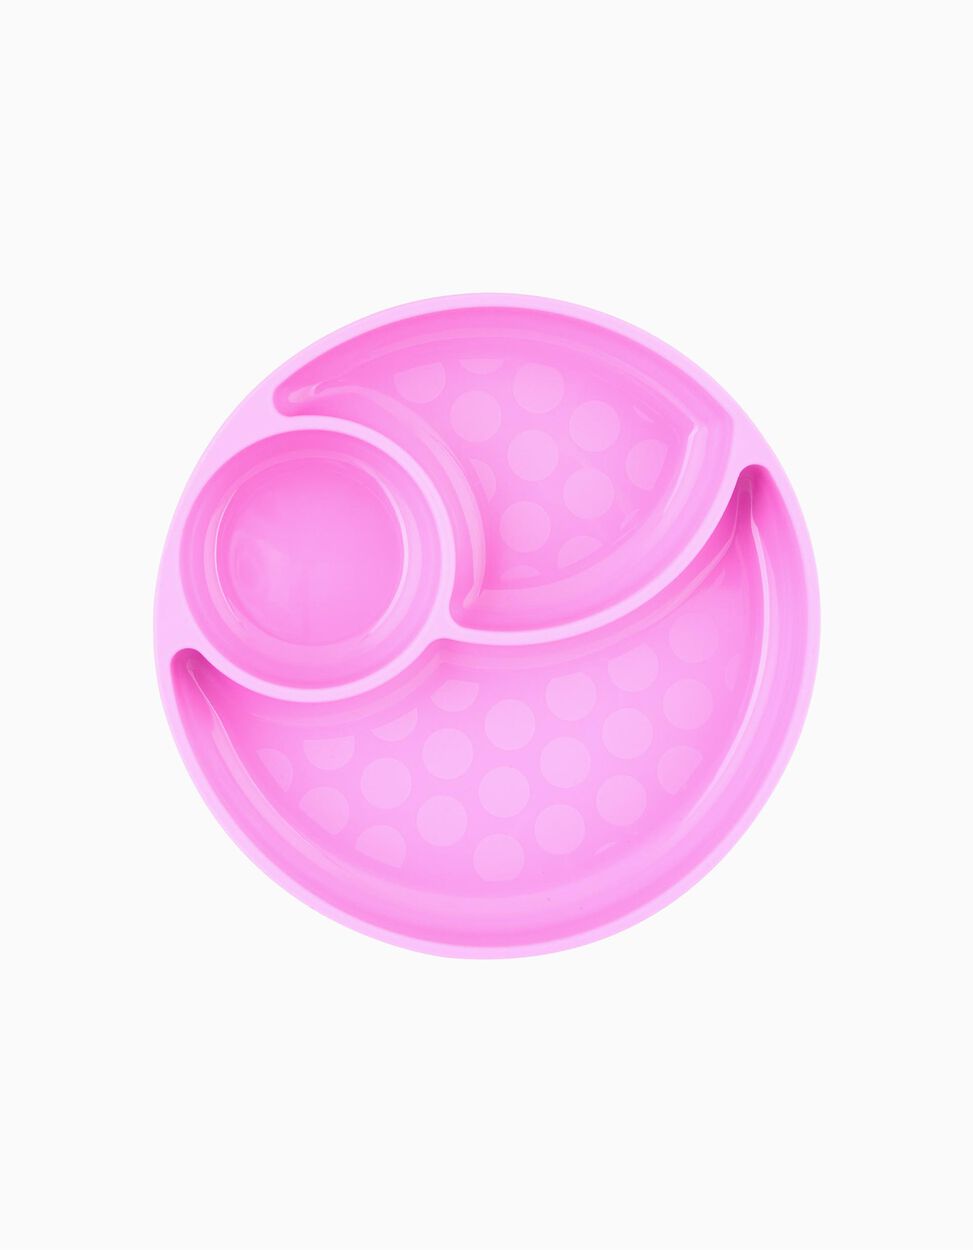 Plato con Compartimentos de Silicona Eat Easy Chicco Pink